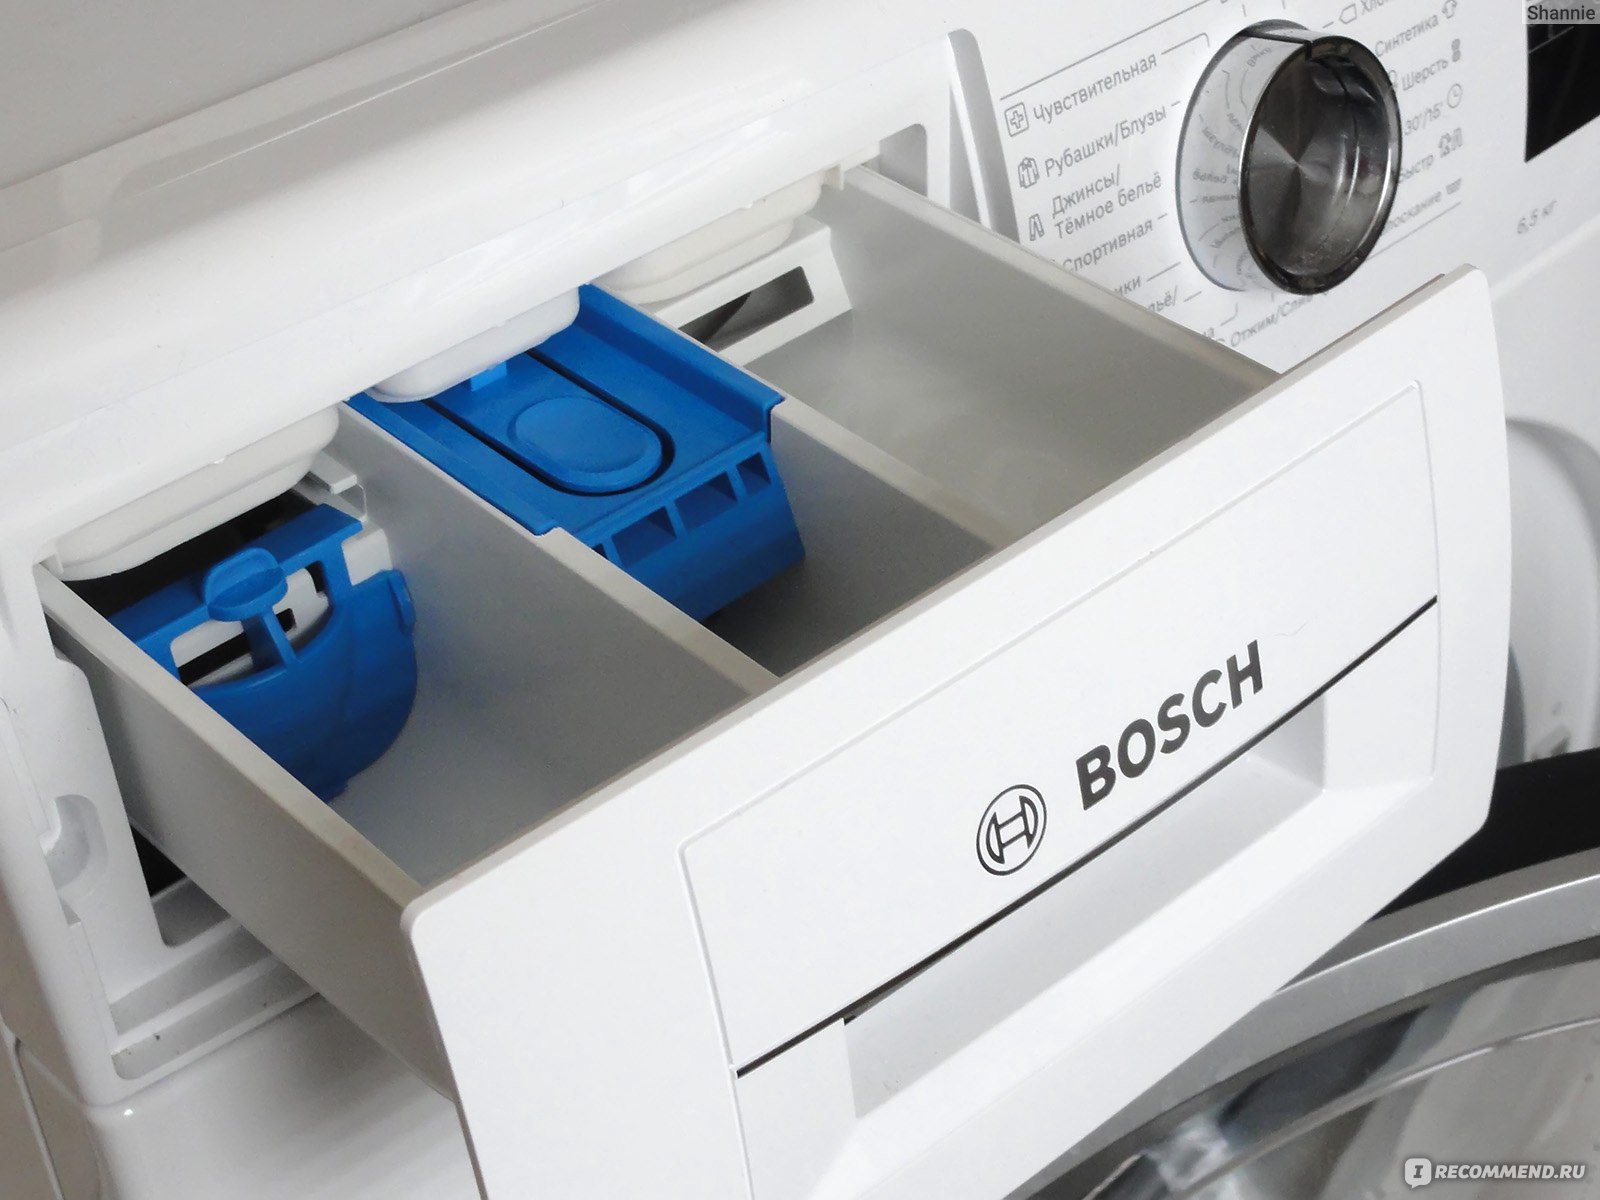 Bosch serie 4 perfectcare. Bosch serie 4 PERFECTCARE wlp20266oe. Bosch wha122x1oe. Wlp2026eoe стиральная машина Bosch. Стиральная машина Bosch serie 4 PERFECTCARE wha122x1oe.